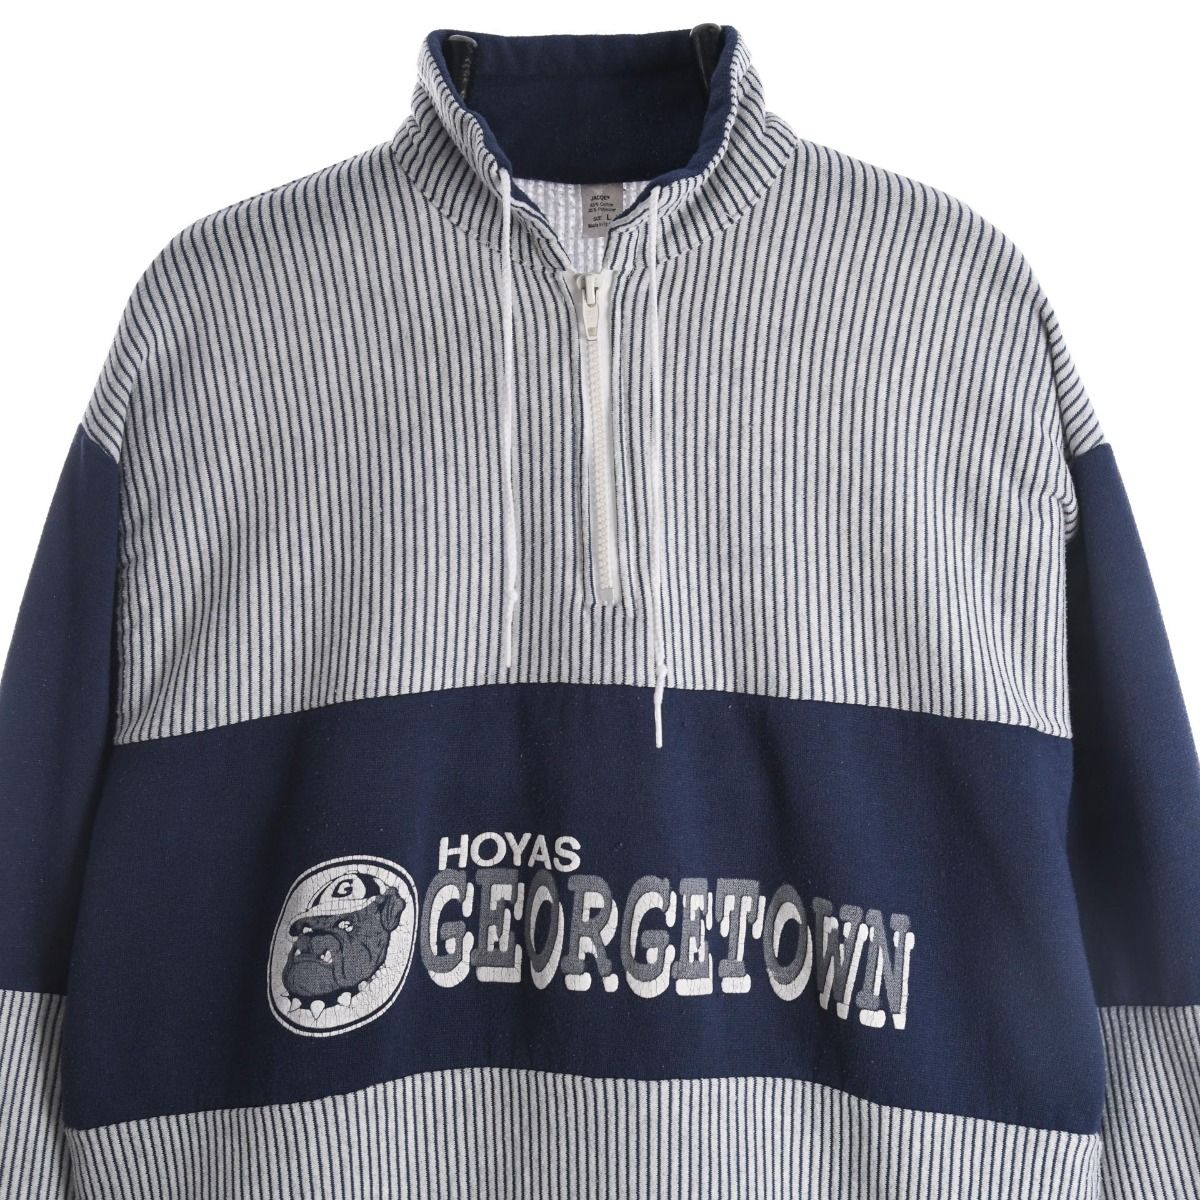 Georgetown Hoyas 1980s Sweatshirt